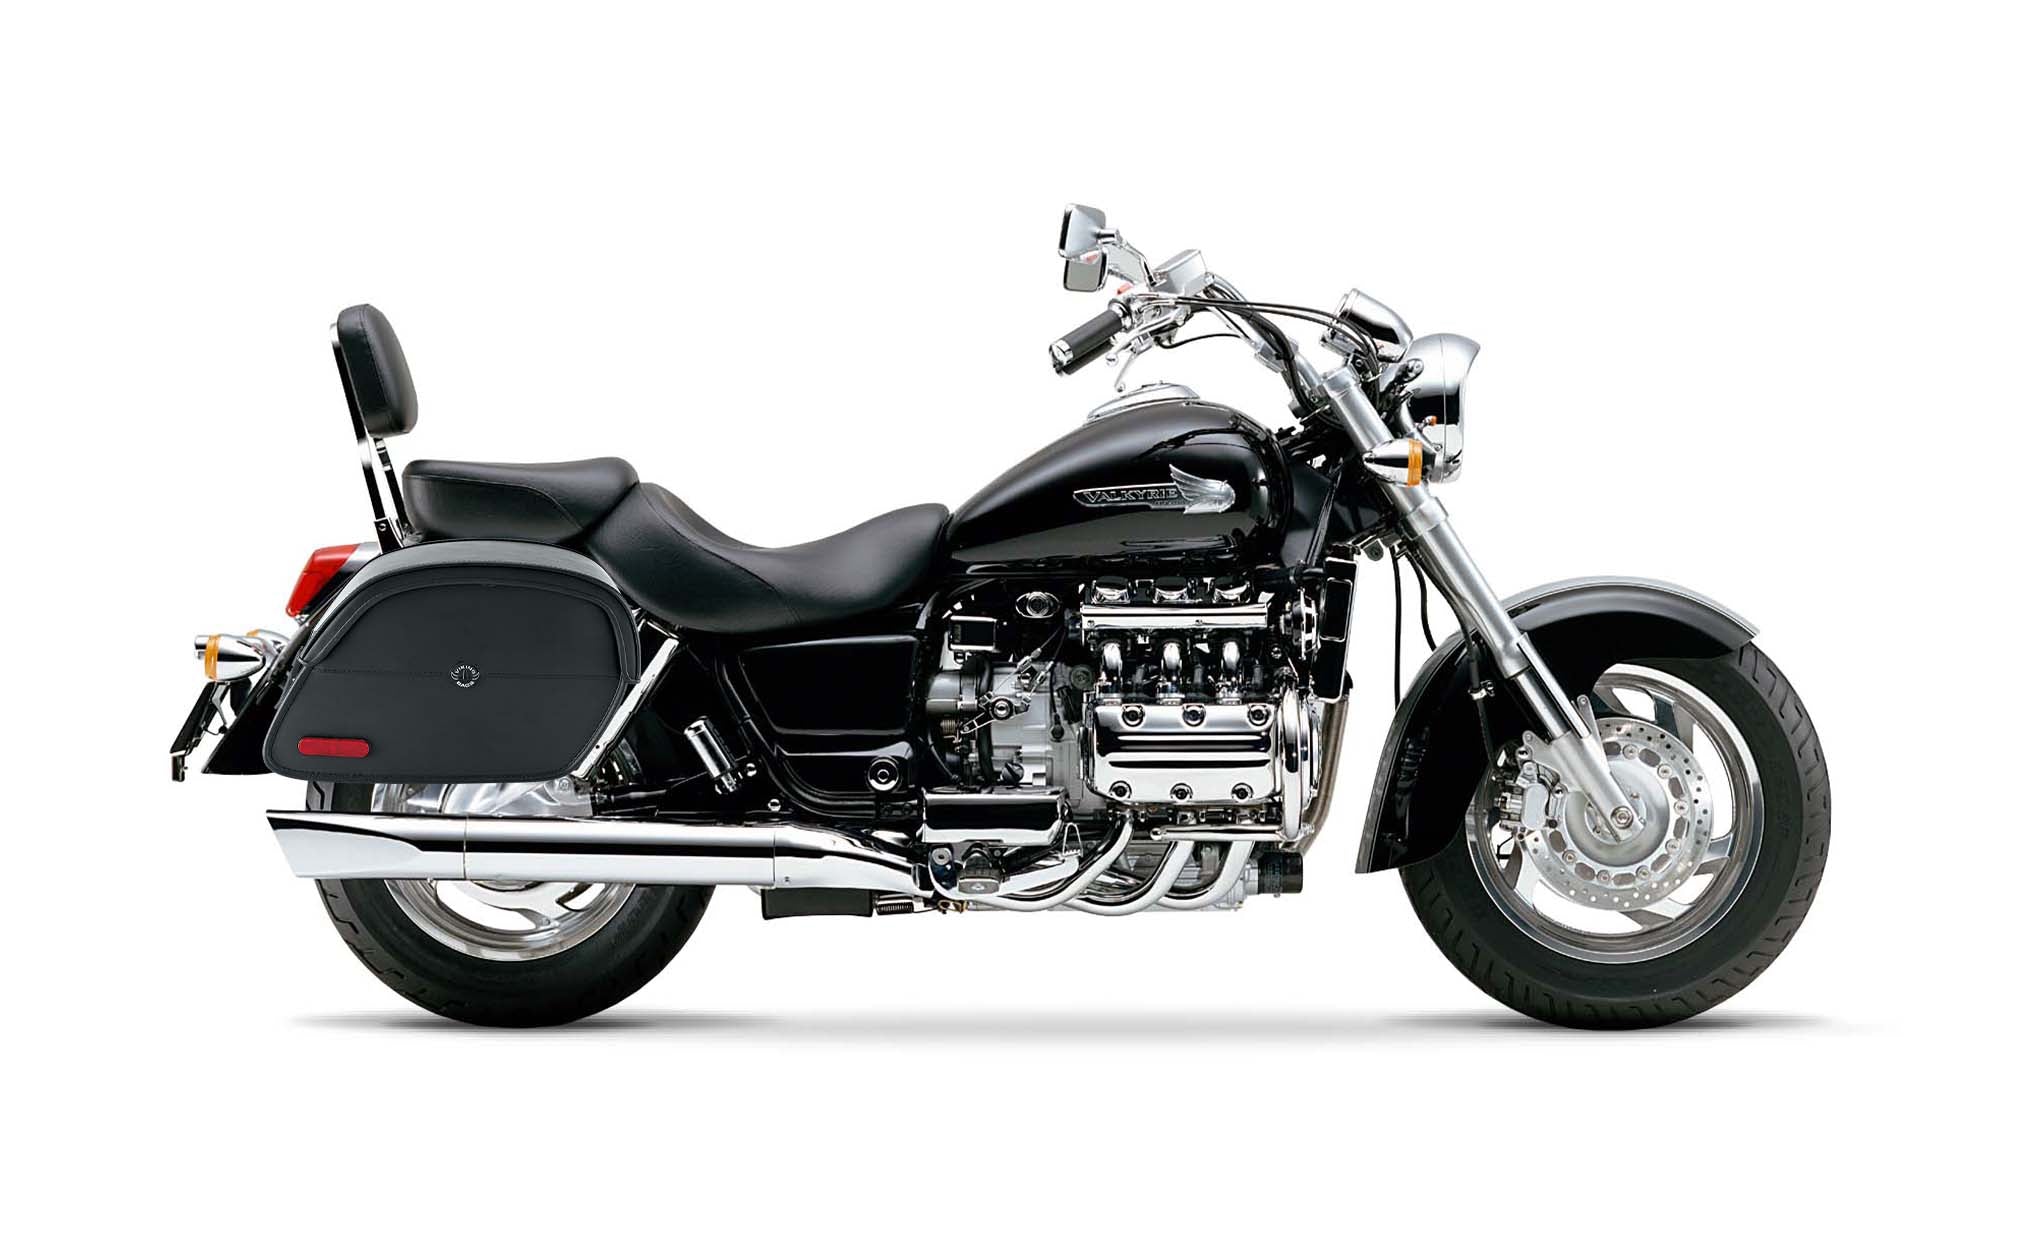 Viking California Large Honda 1500 Valkyrie Standard Leather Motorcycle Saddlebags on Bike Photo @expand